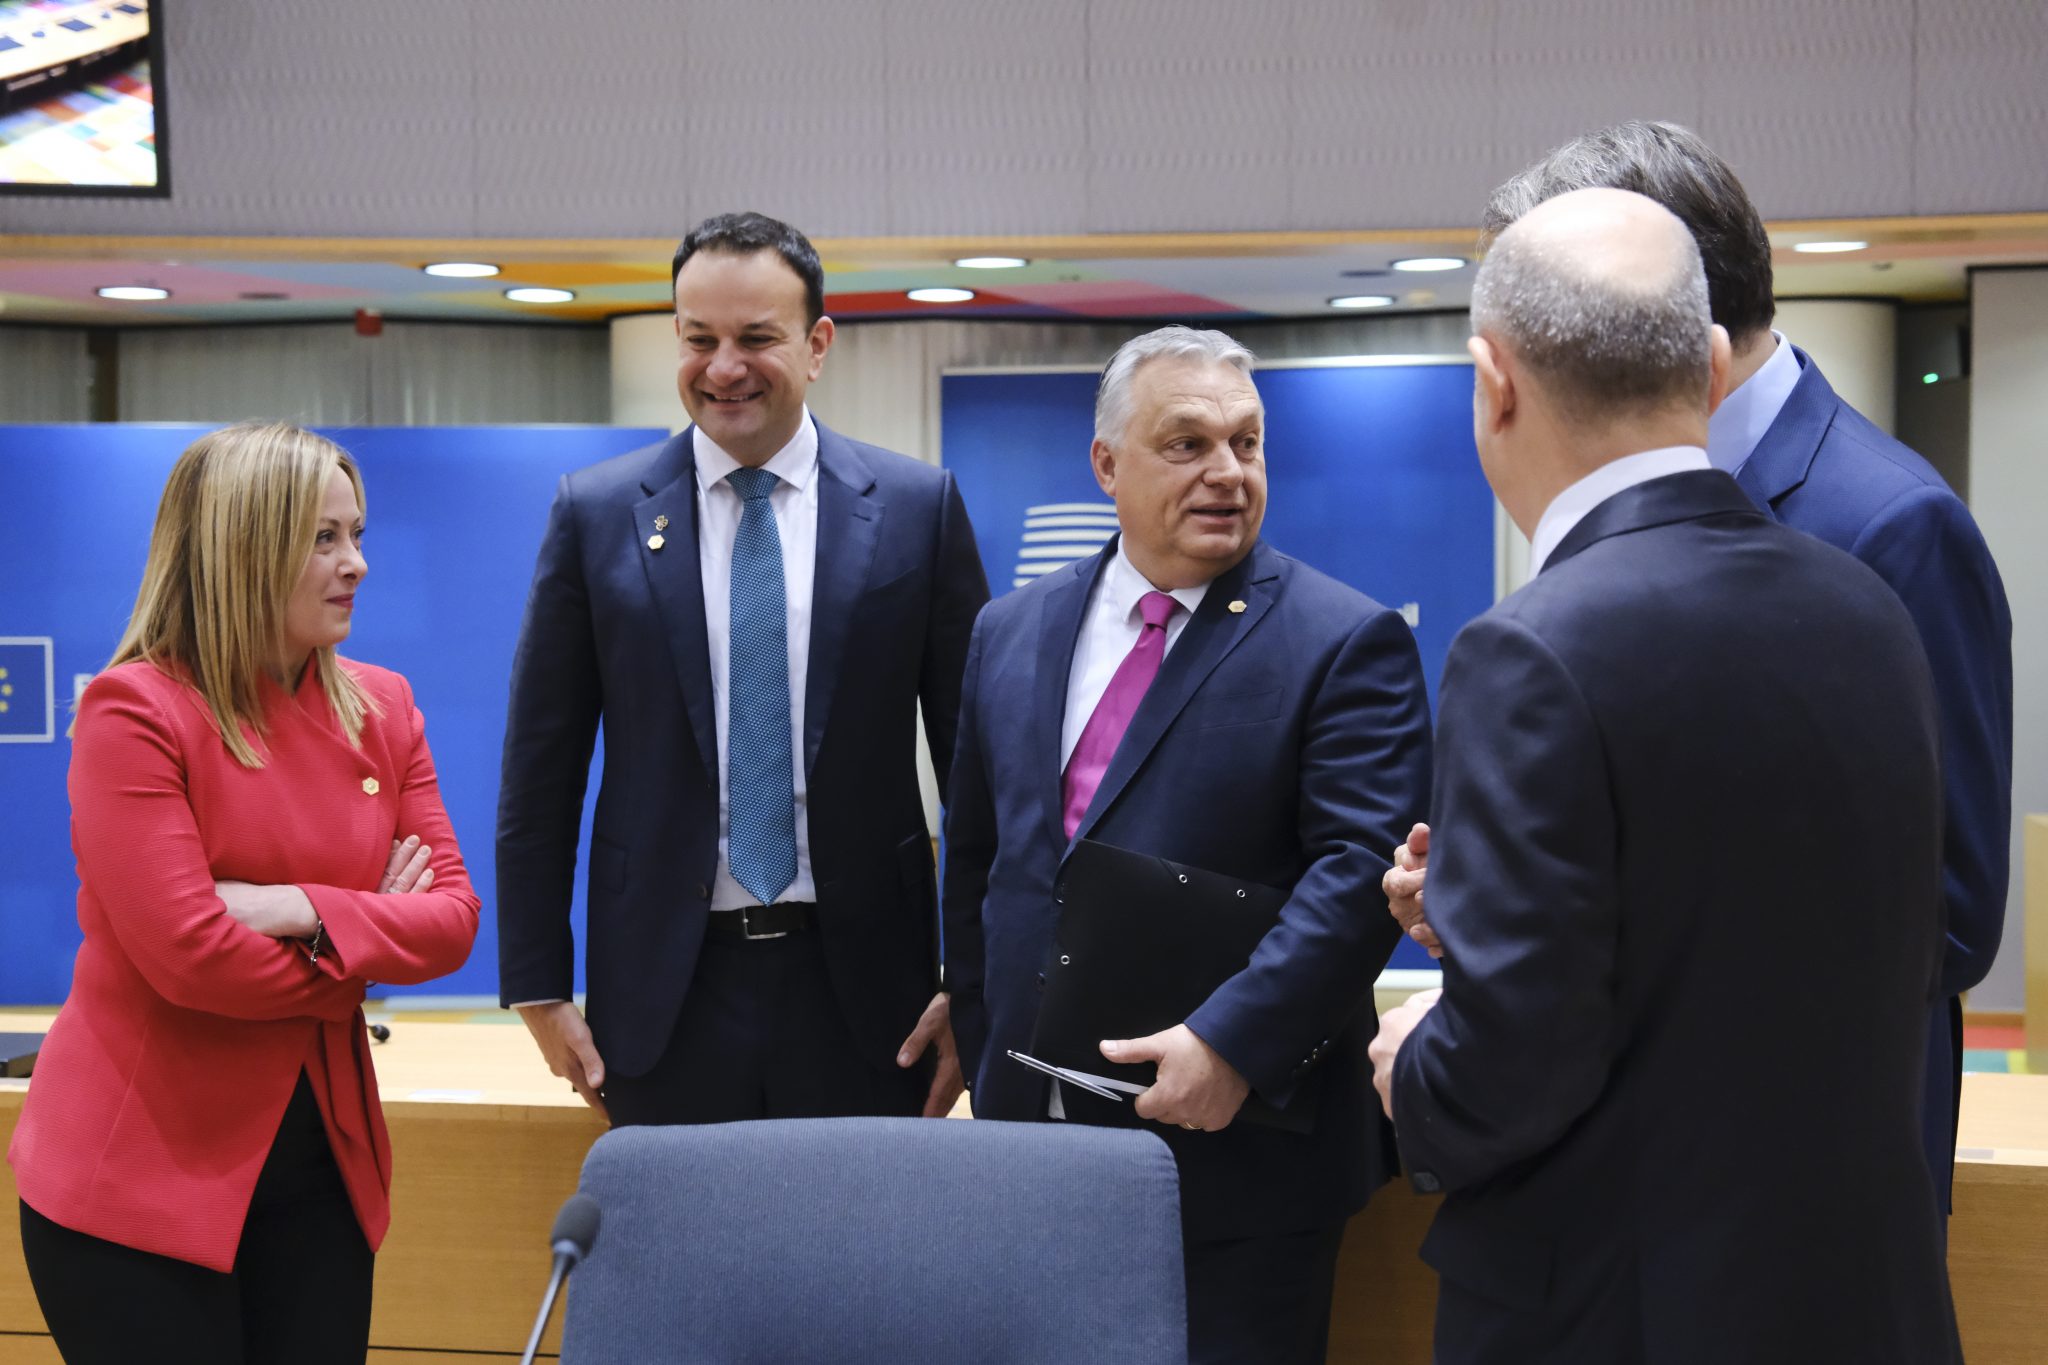 Viktor Orbán fordert EU zur Finanzierung von Grenzzäunen auf